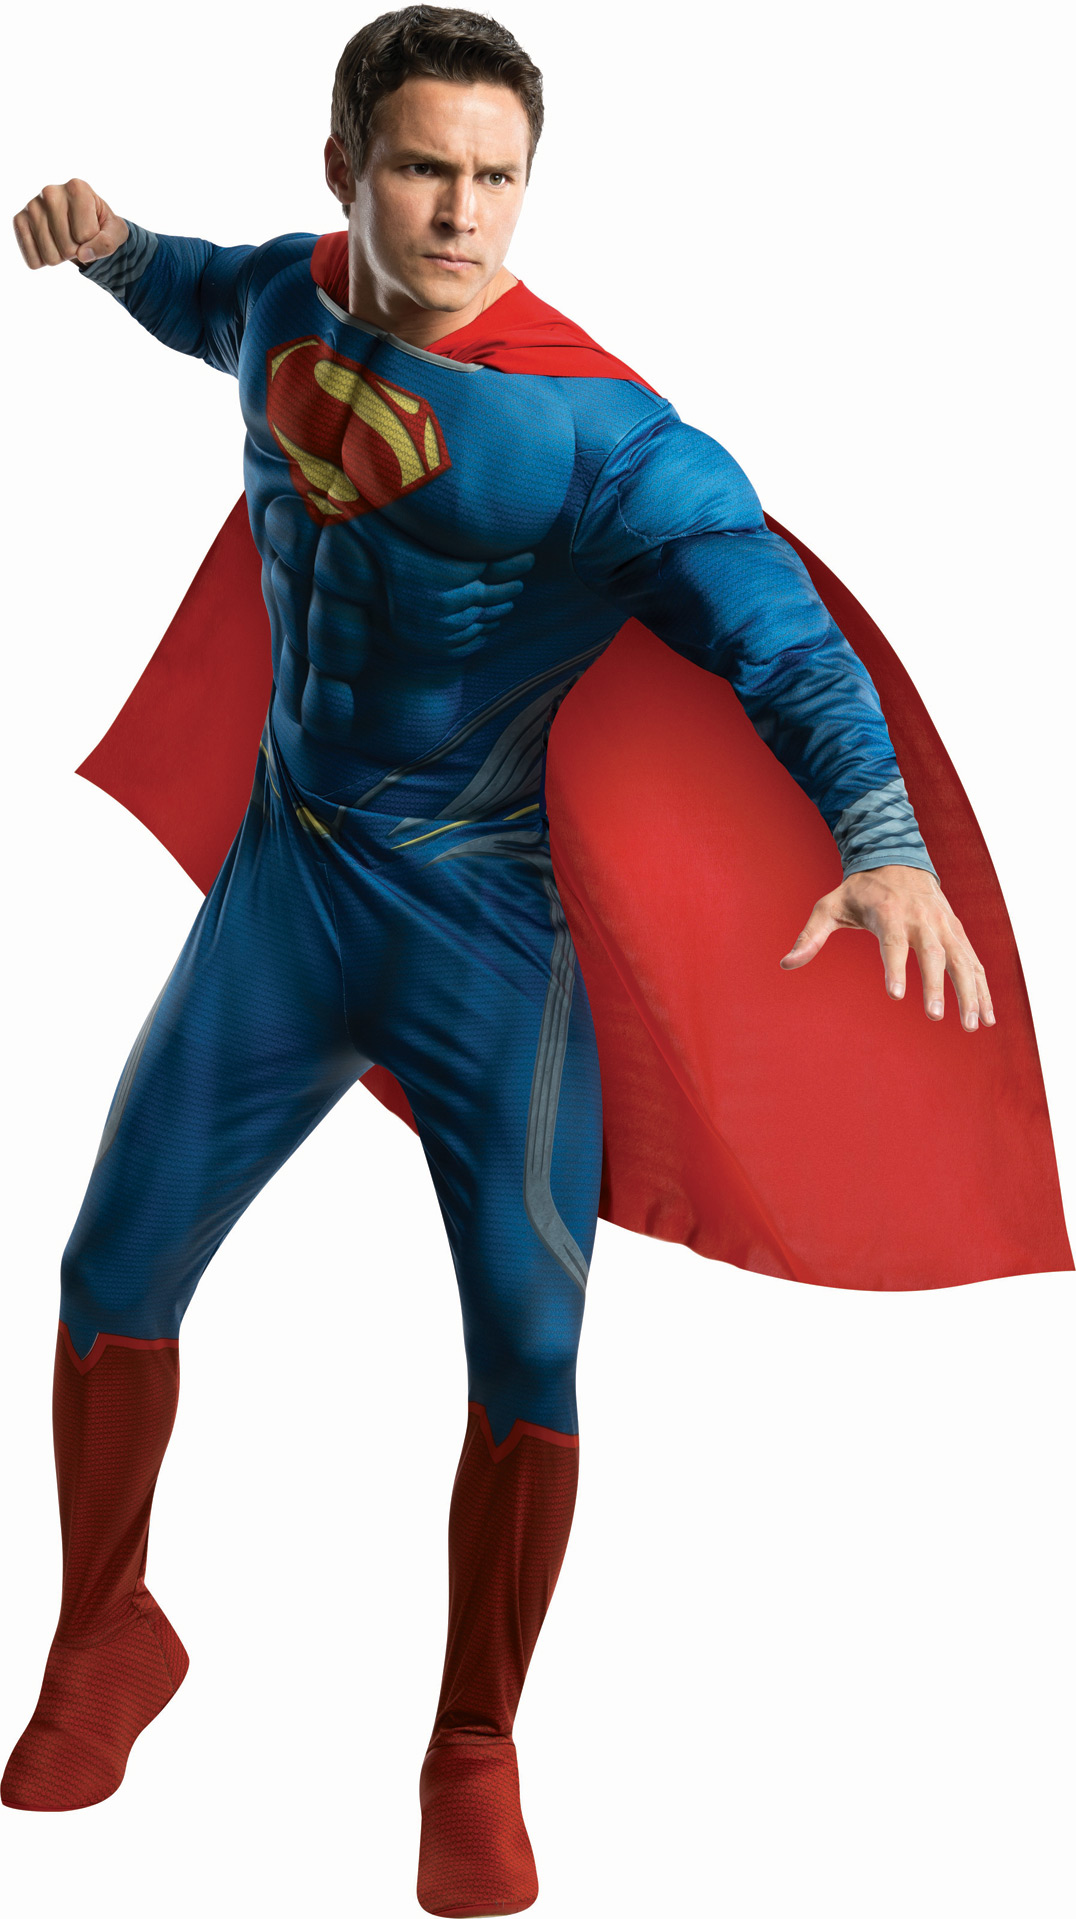 COSTUME SUPERMAN - Jolly Toys - Addobbi ed articoli per feste ed eventi